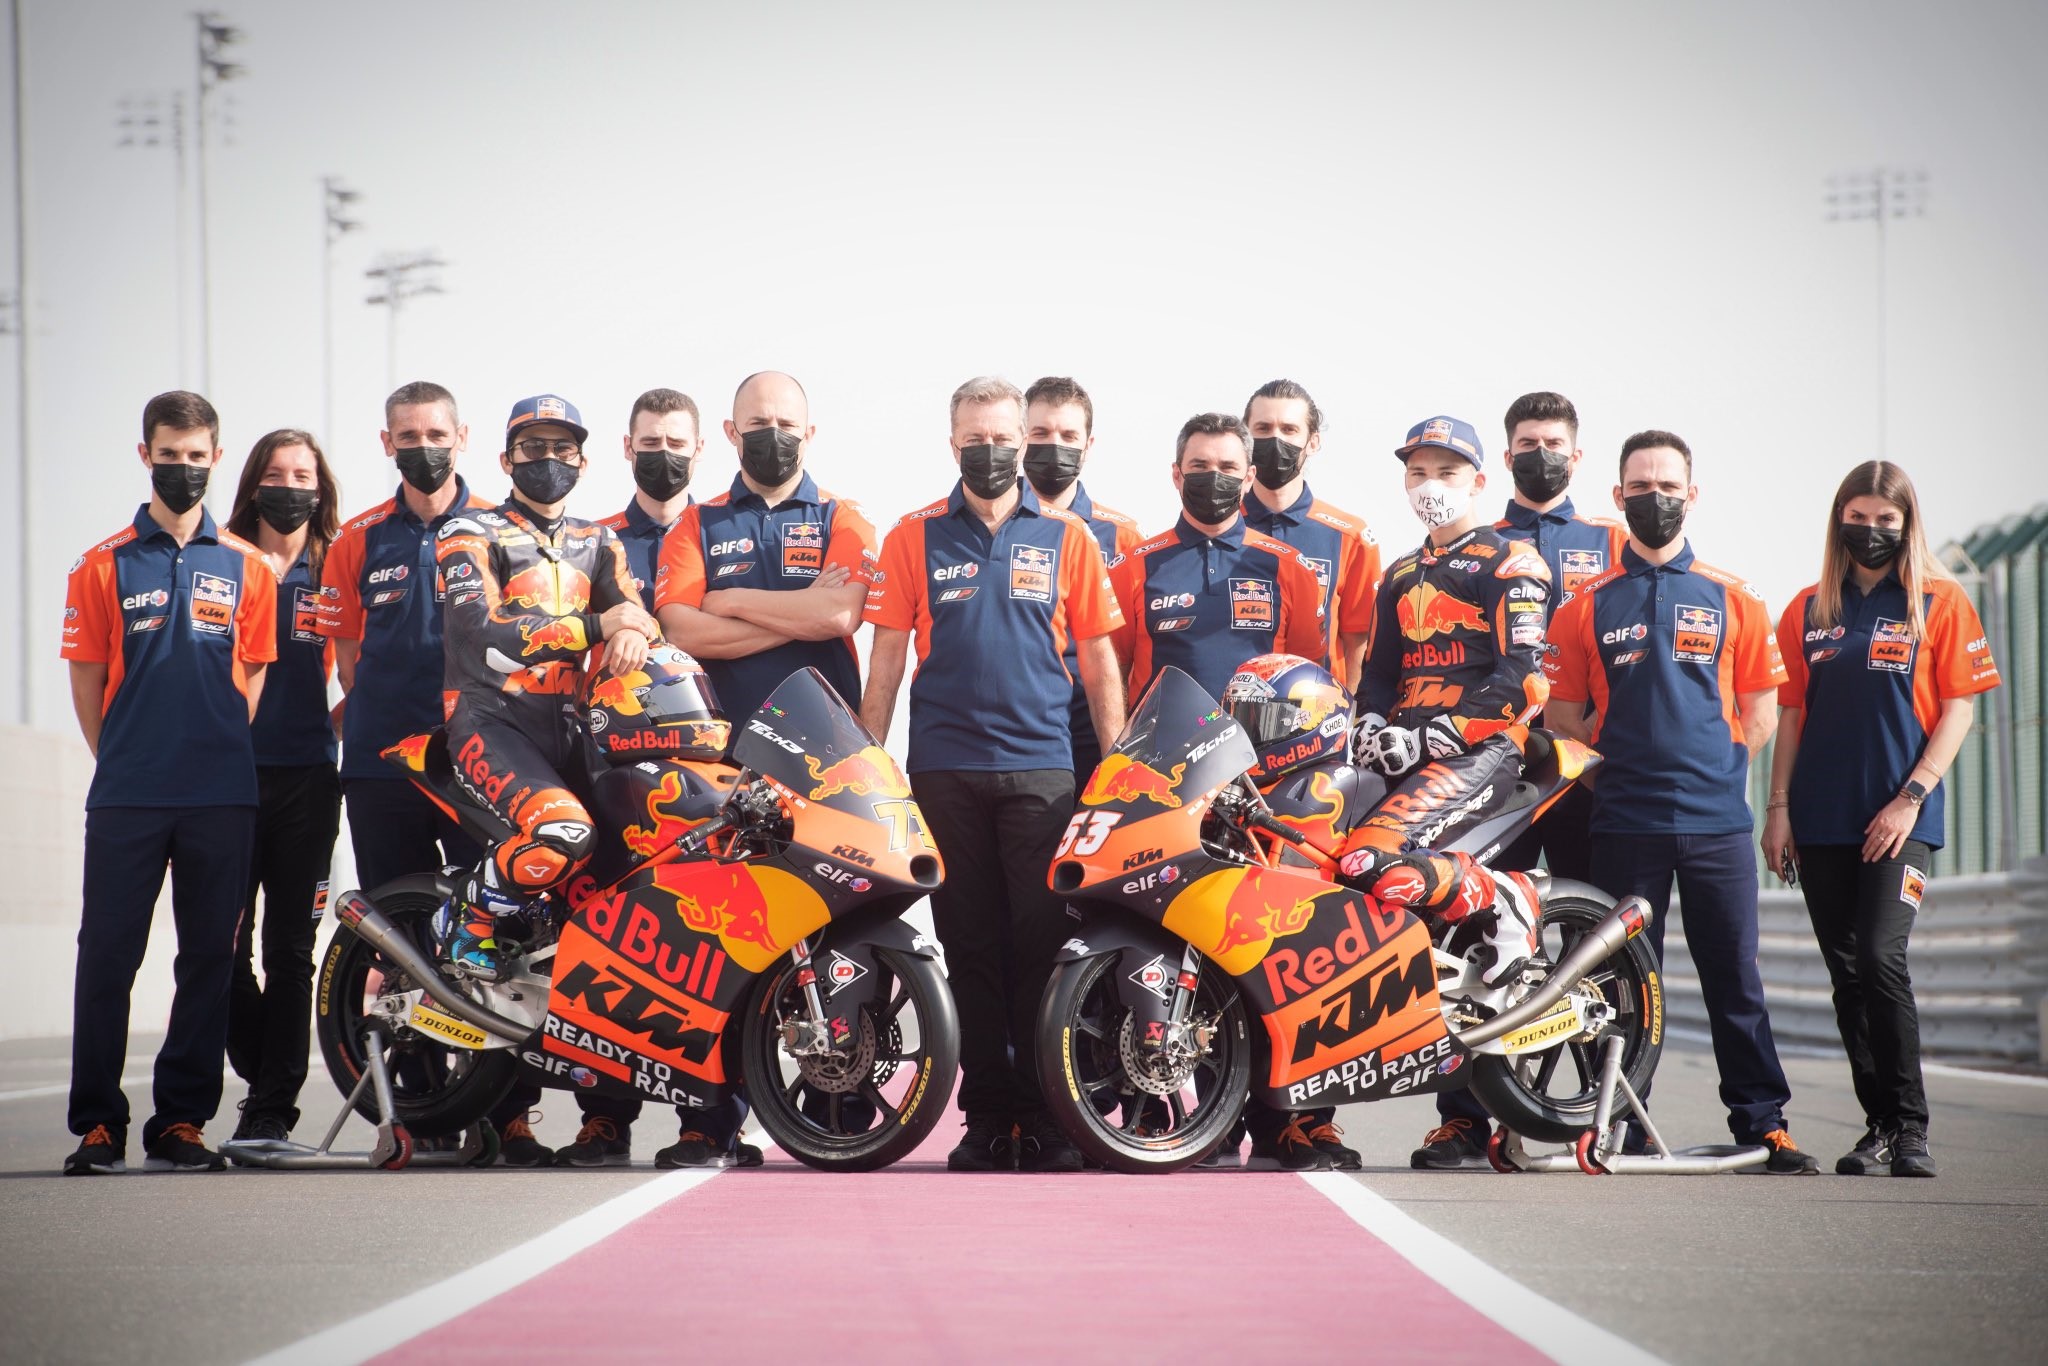 สรุปรายชื่อทีมและนักแข่ง ในการแข่งขัน MotoGP 2021